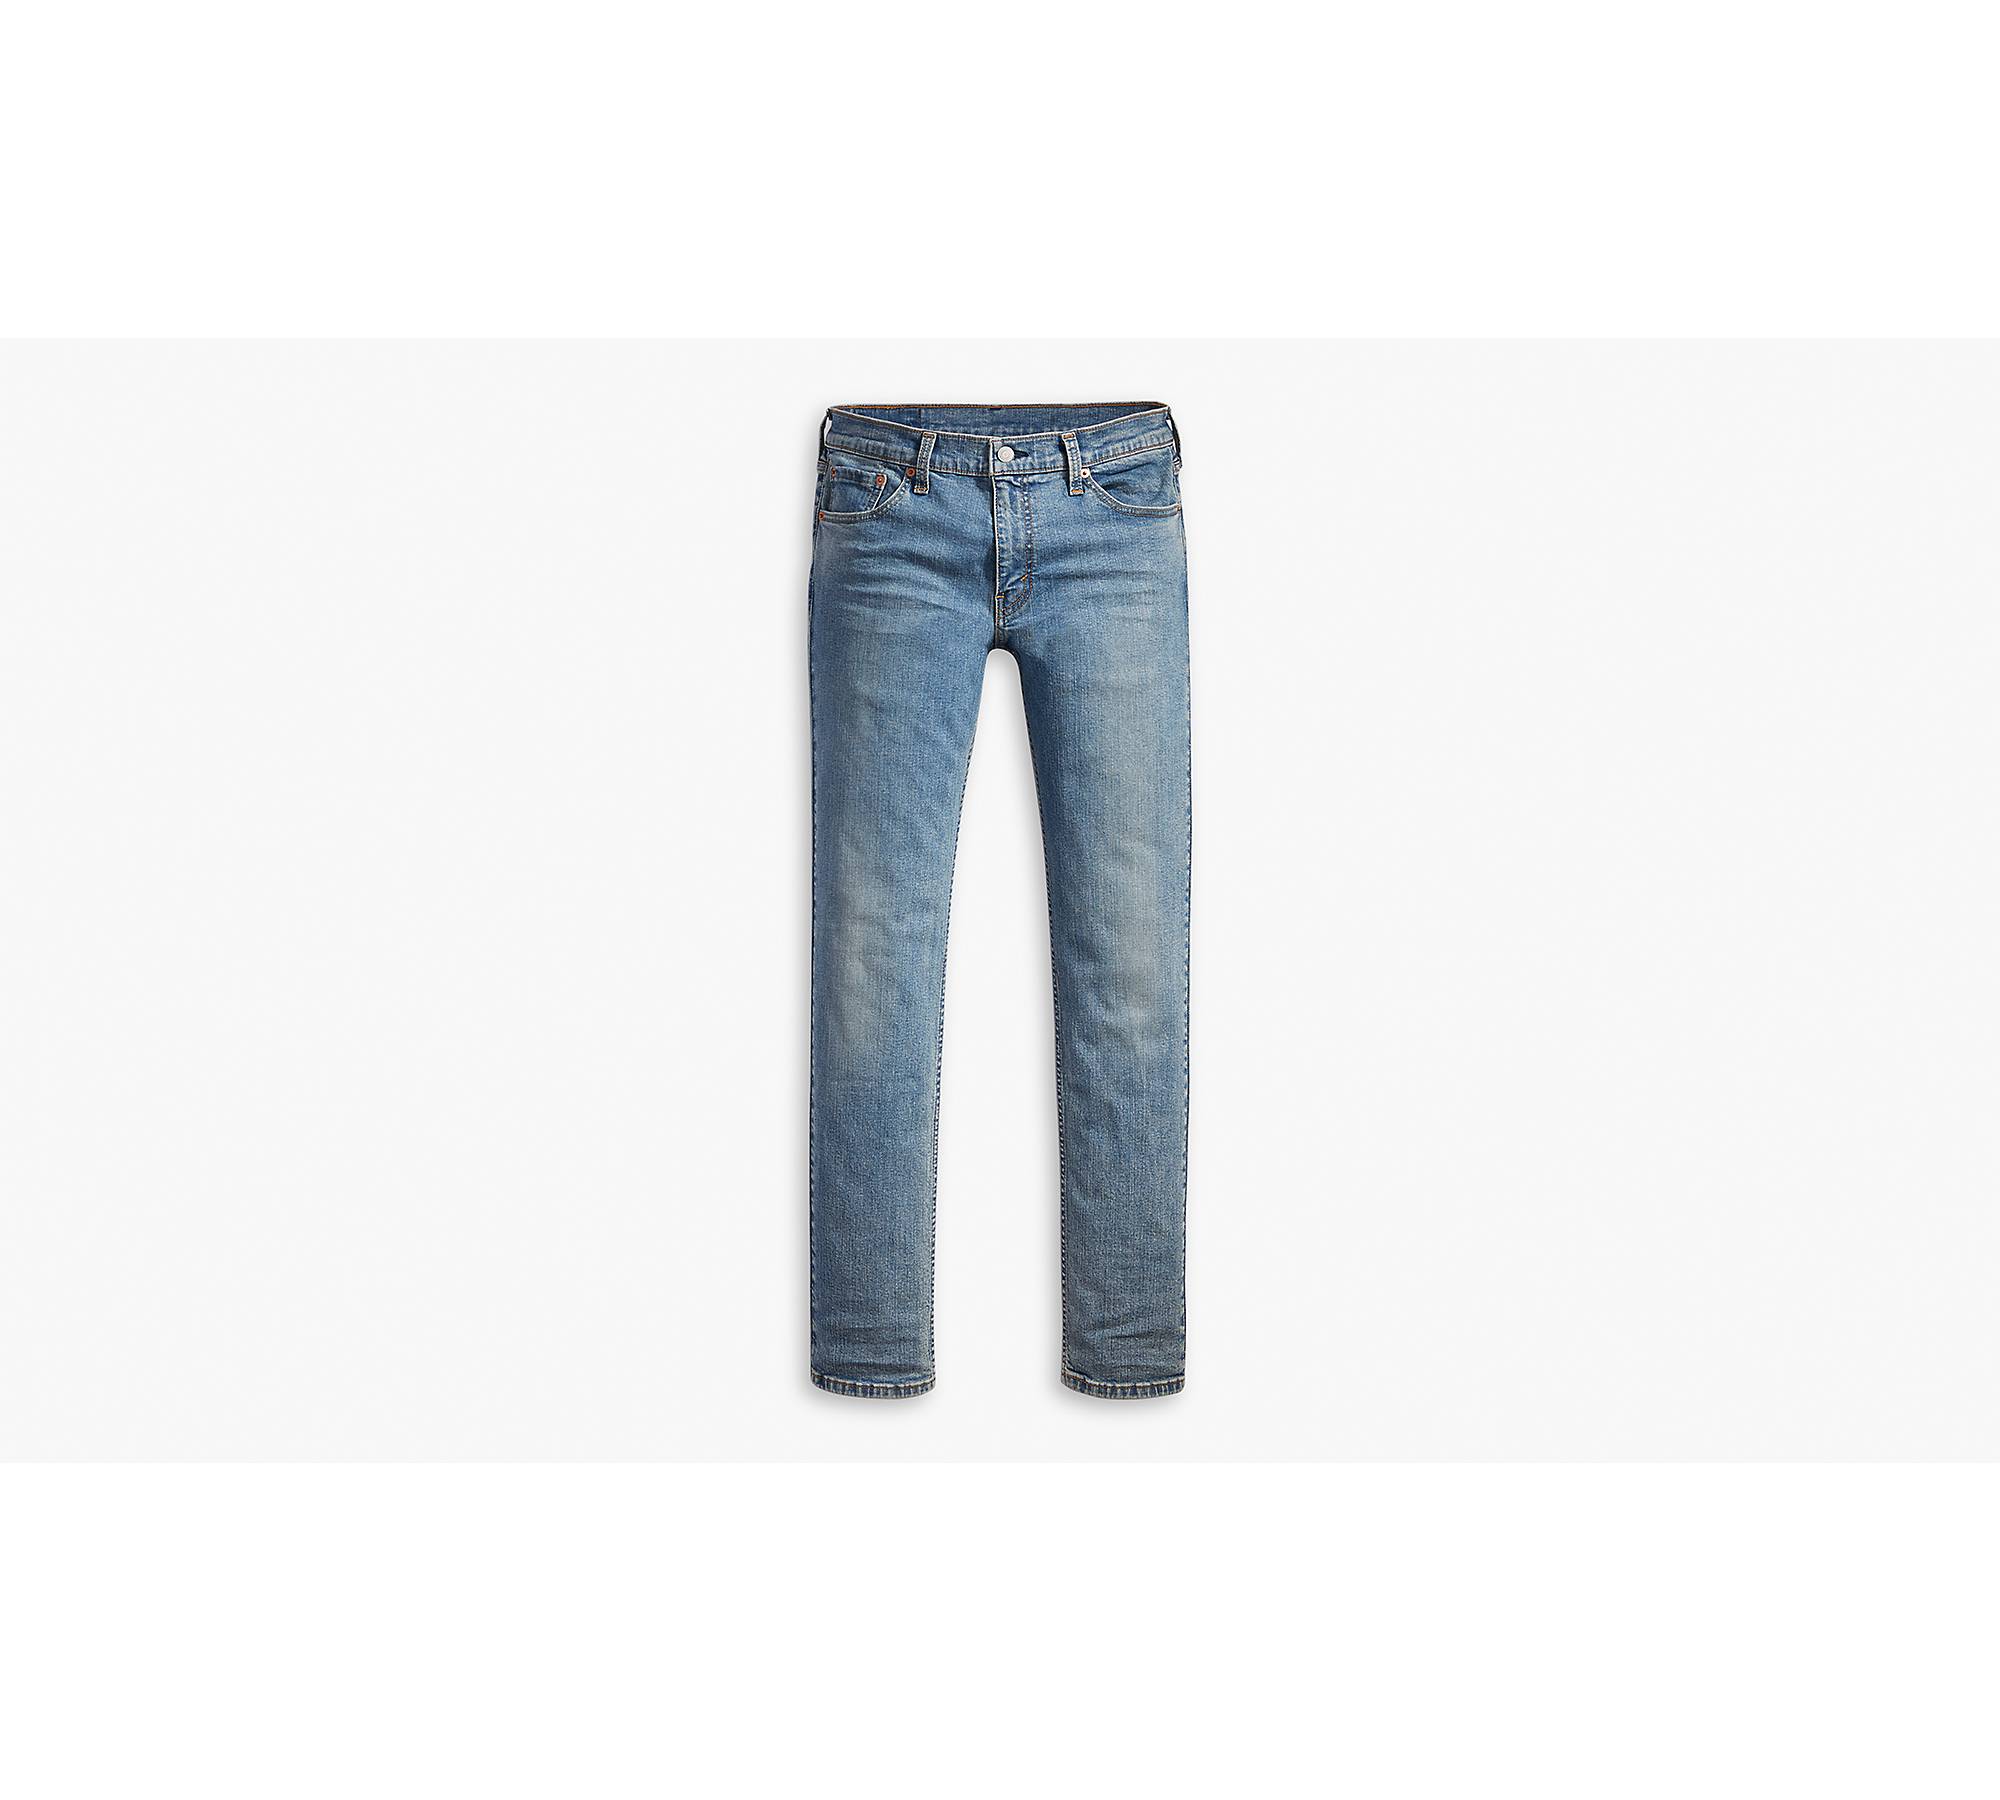 Levi's Flex Men's 511 Slim Fit Jeans - Pickles